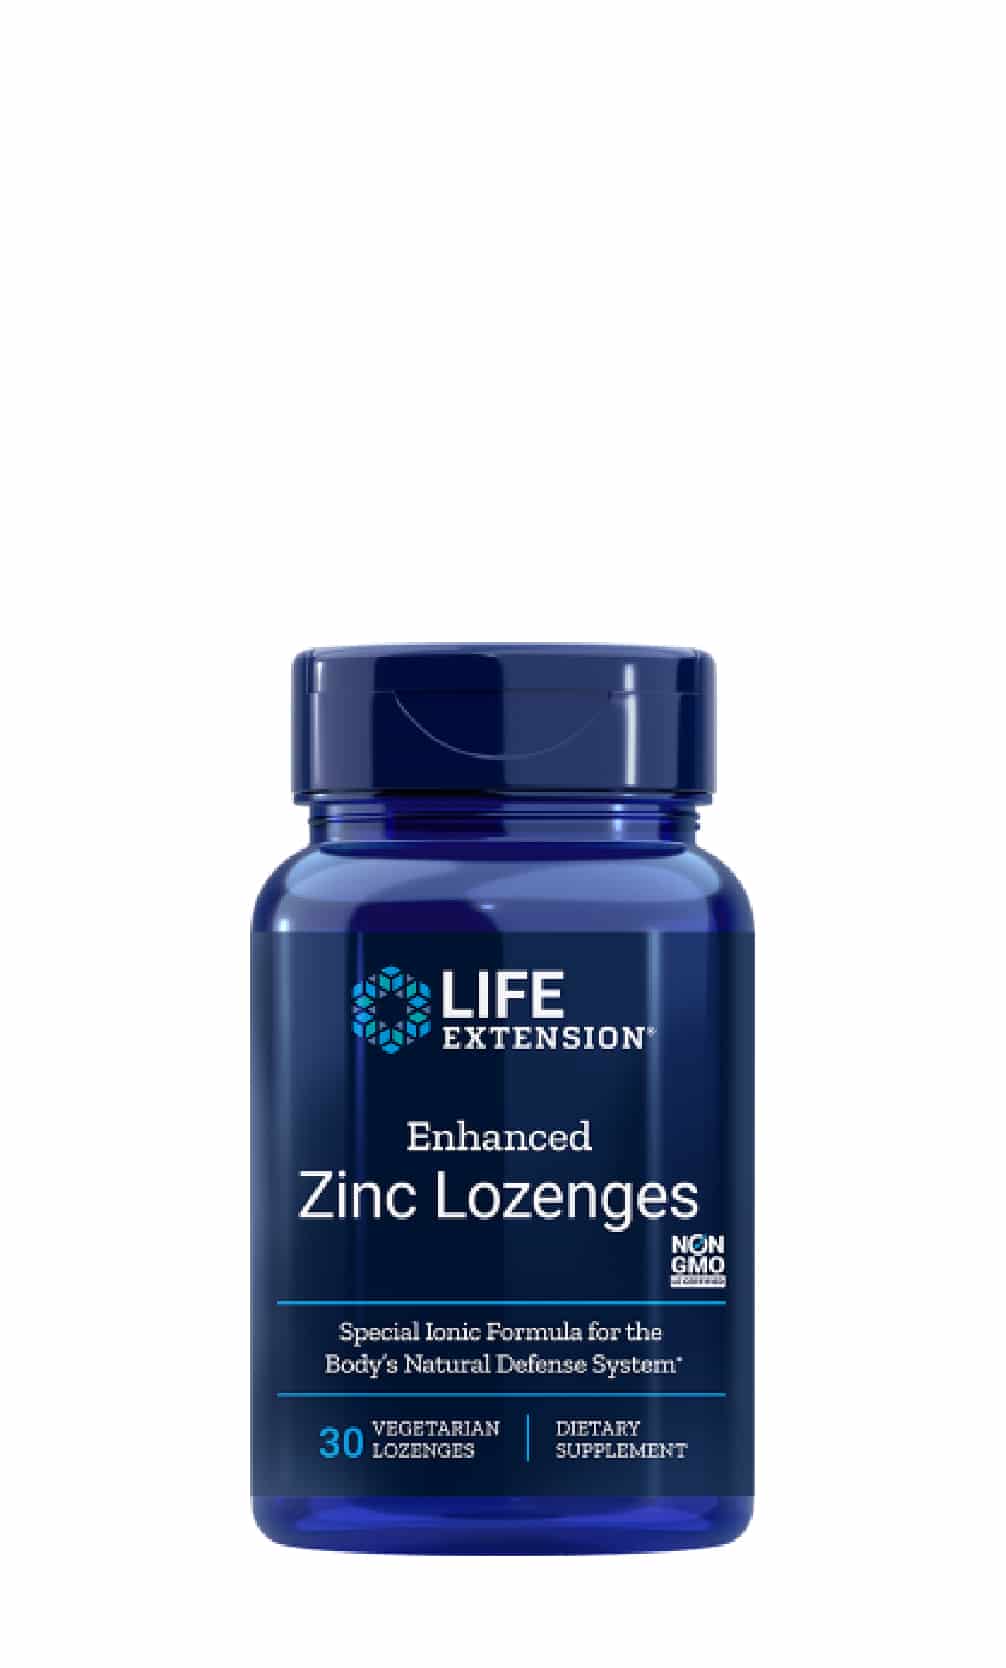 Koop Life Extension Zinc Lozenges (enhanced) bij LiveHelfi